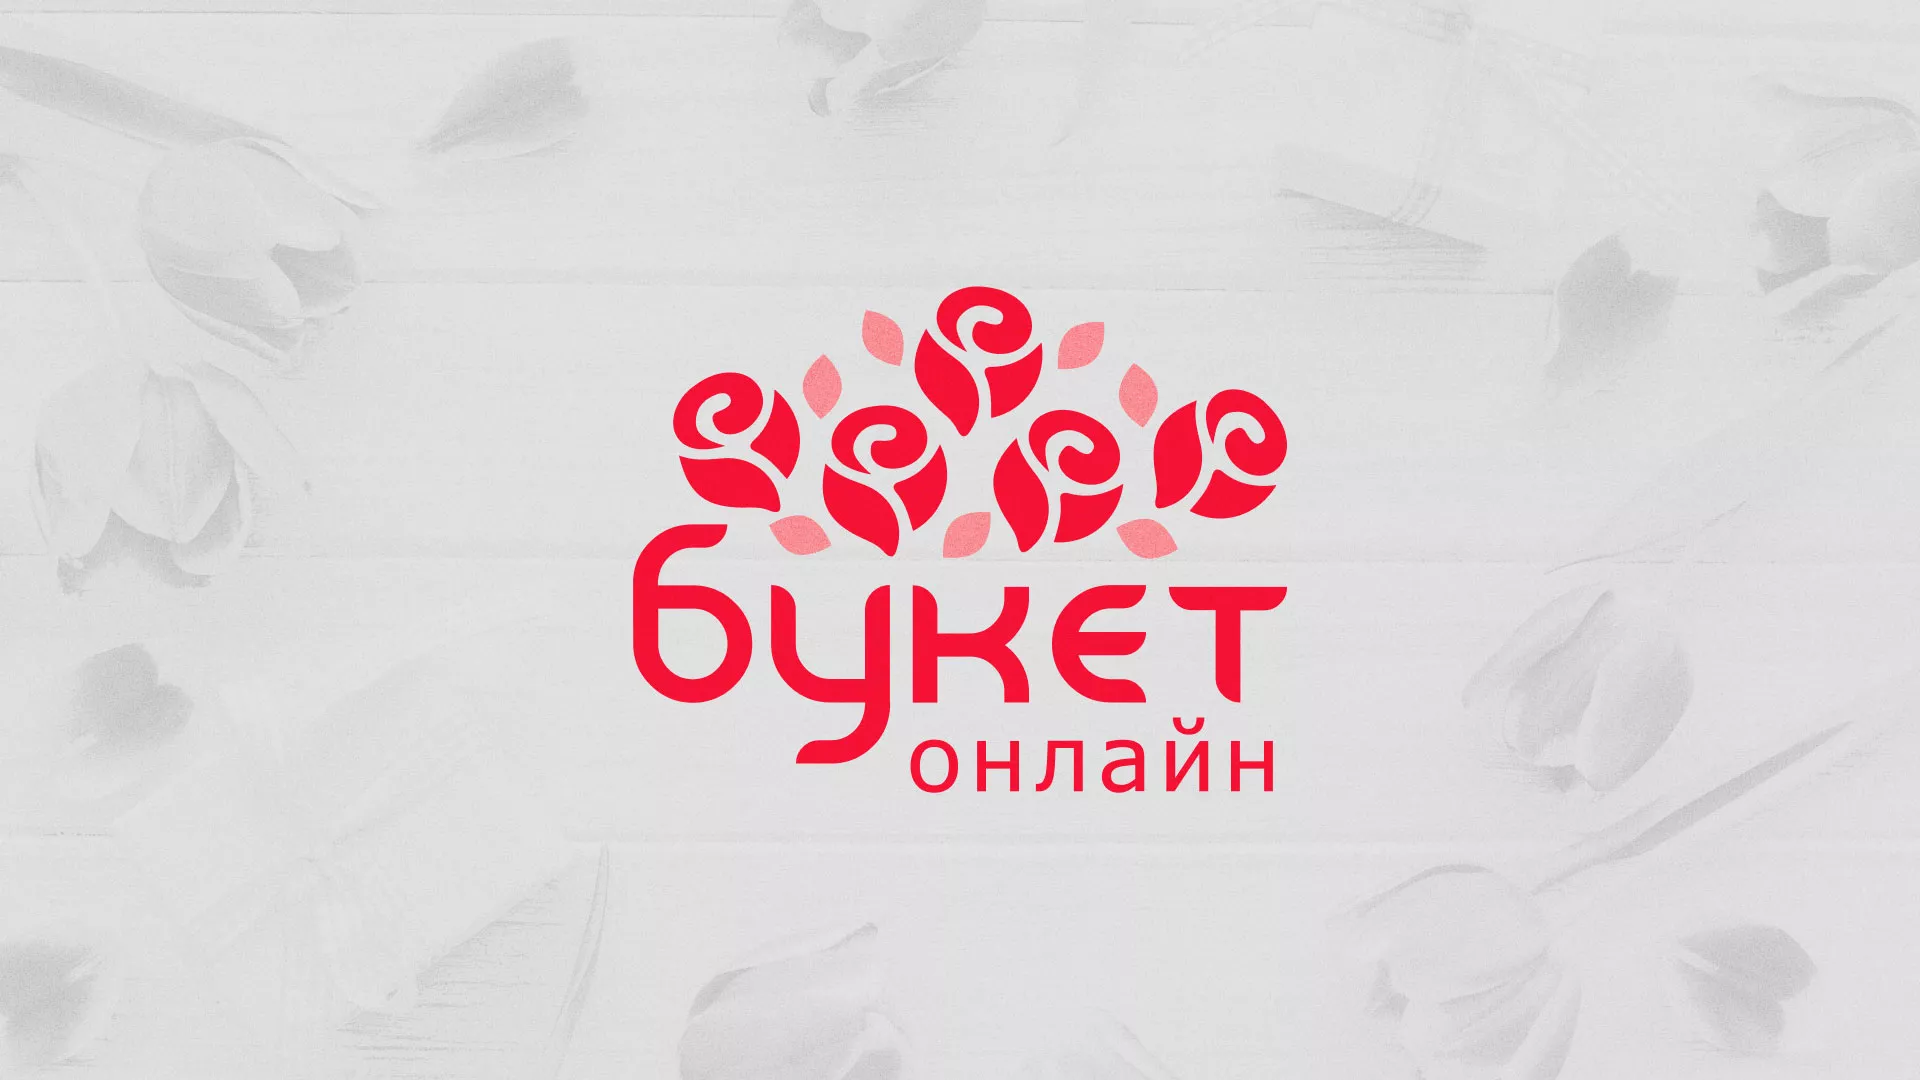 Создание интернет-магазина «Букет-онлайн» по цветам в Сызрани